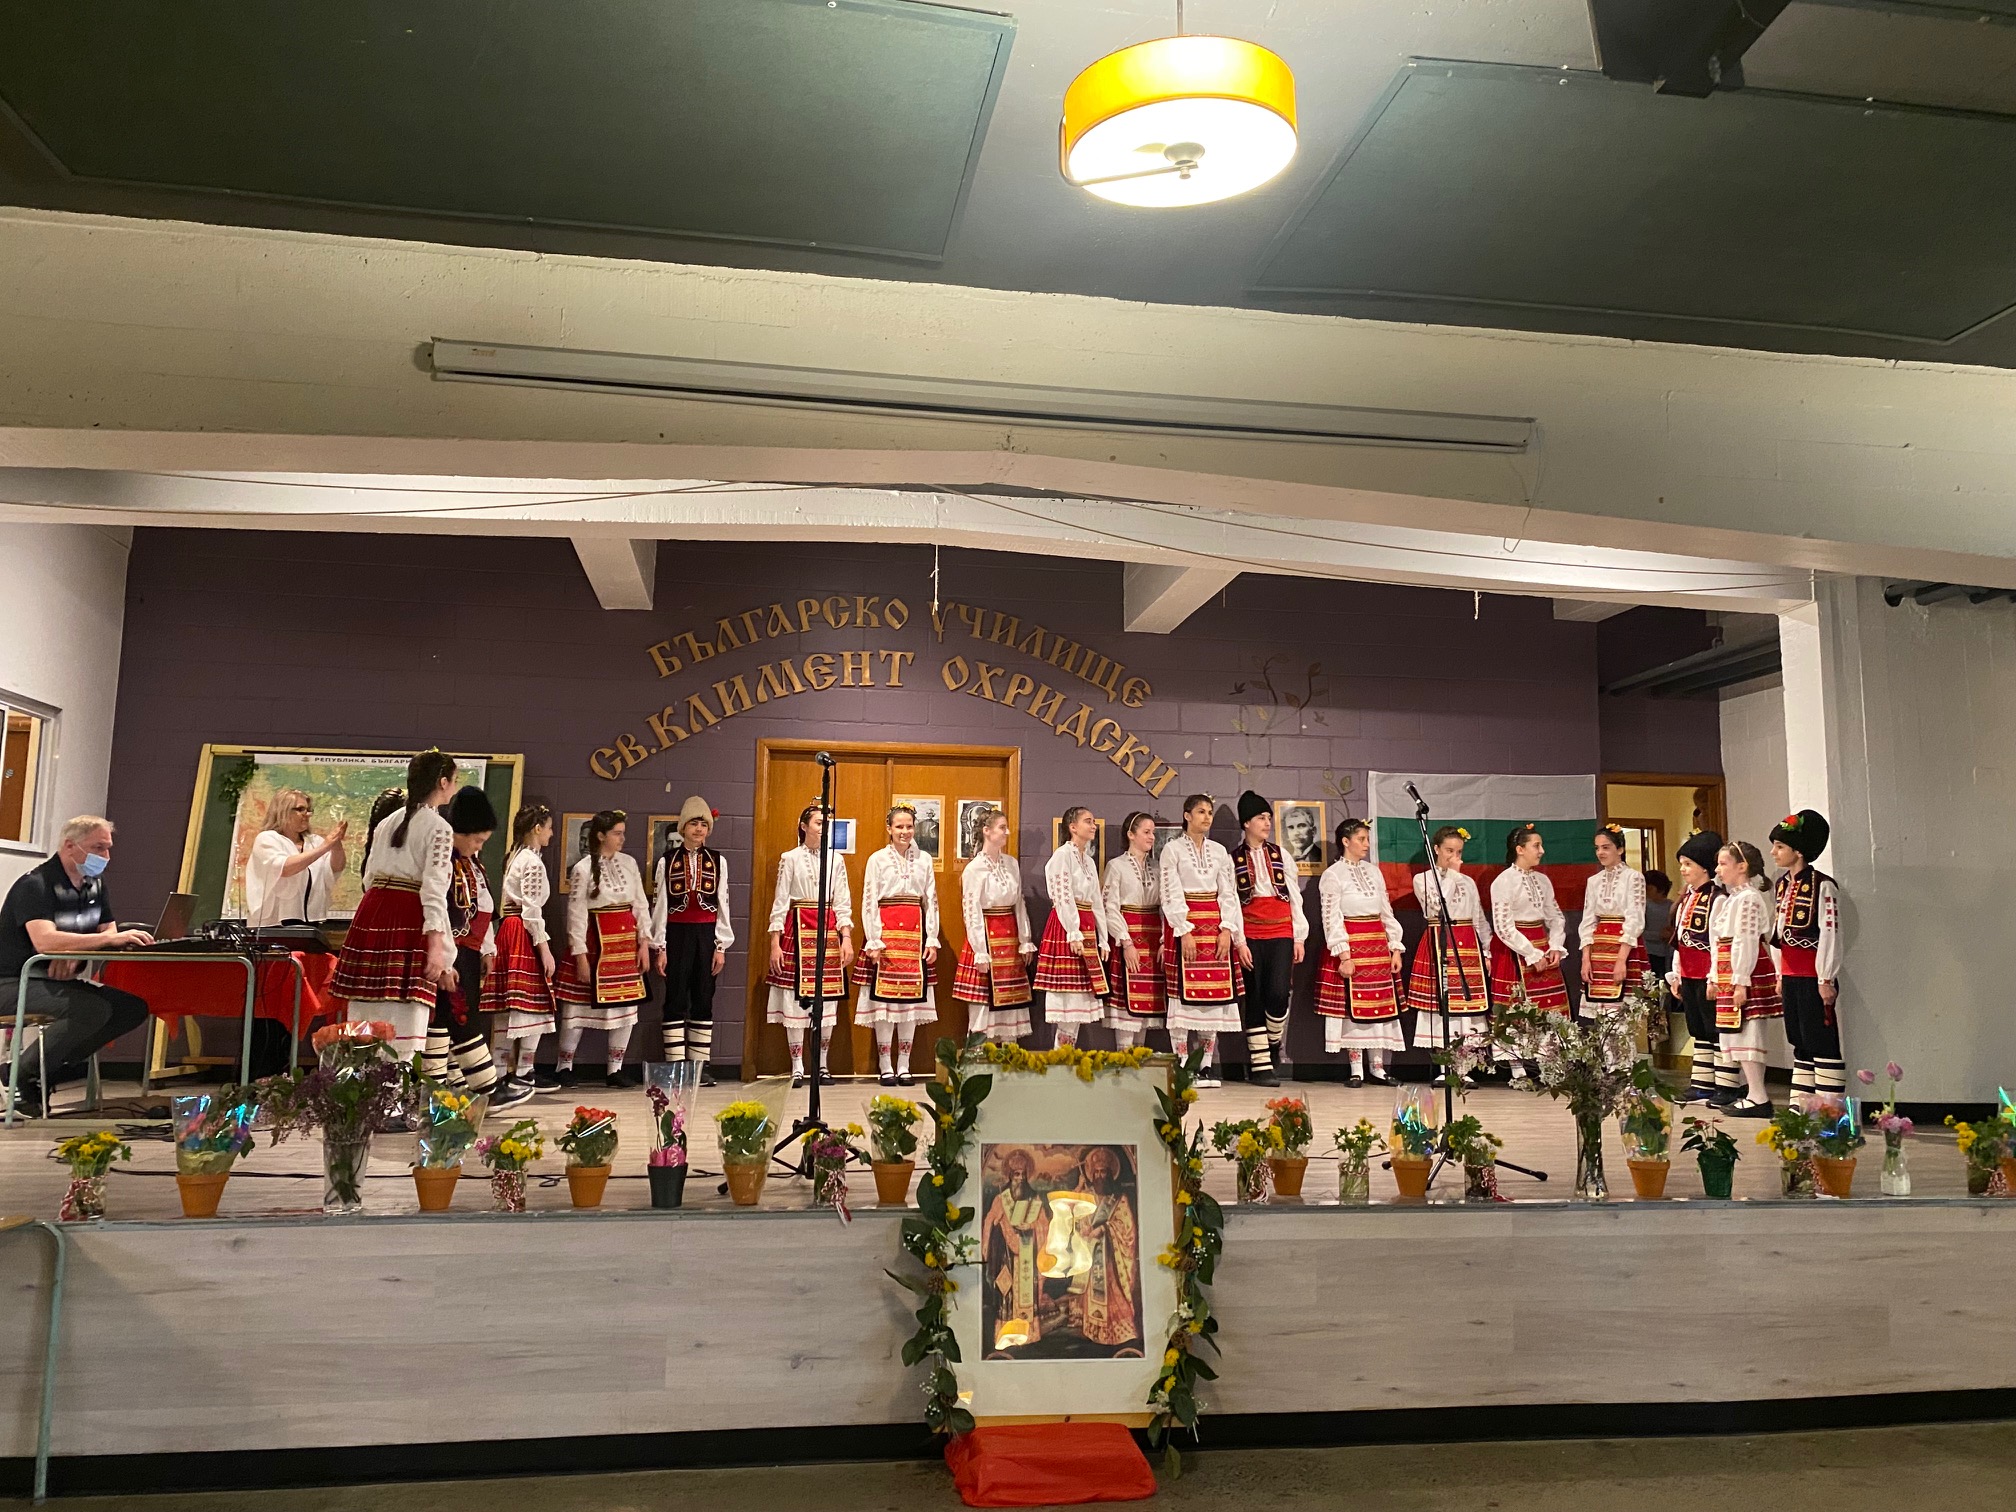 Тържество на  българското неделно училище „Св. Климент Охридски“ в Монреал по повод 10-годишнината от неговото създаване